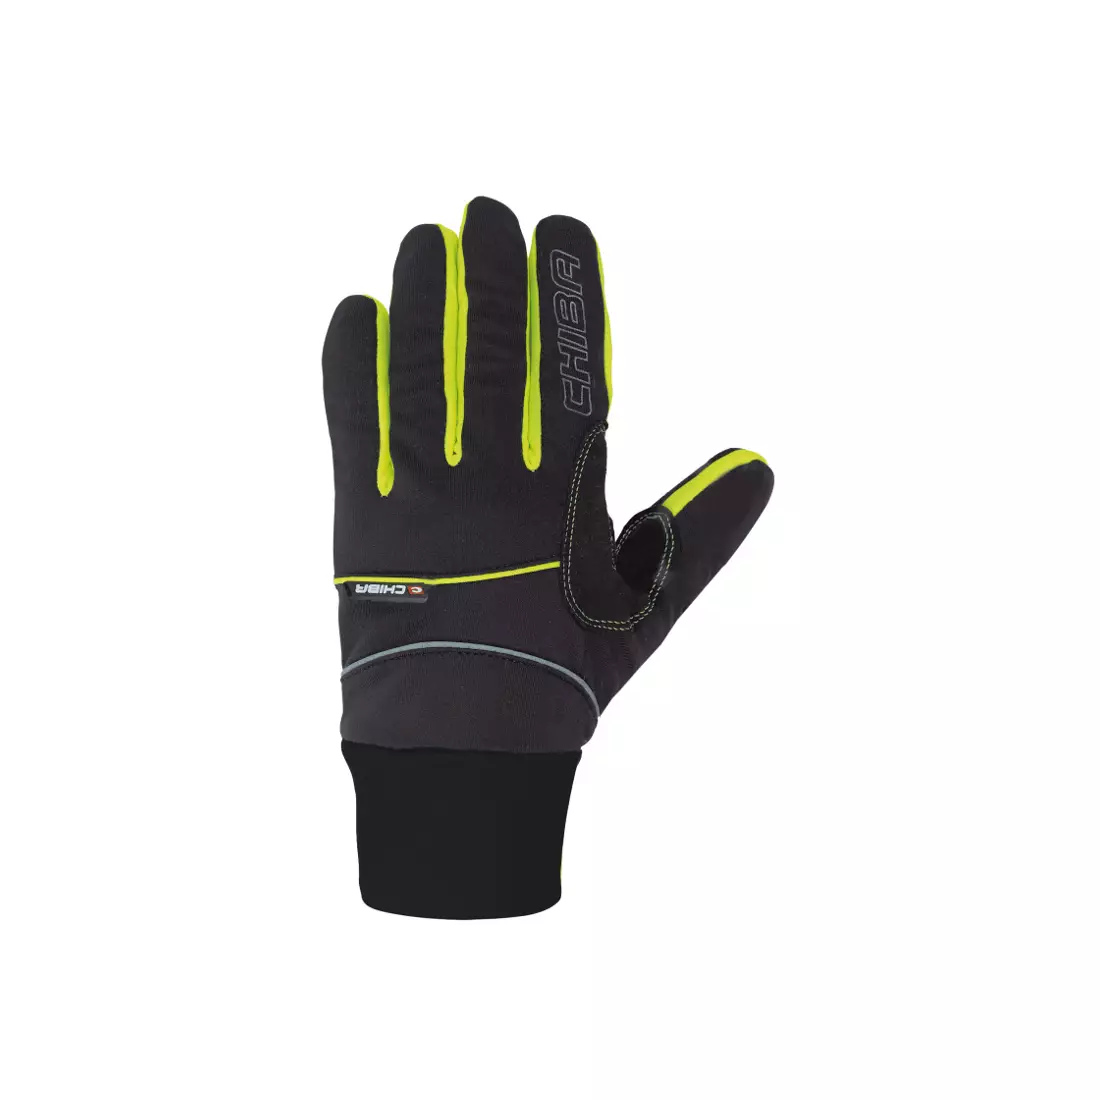 CHIBA CROSS WINDSTOPPER - zimní rukavice, černo-fluor-zelená 31517